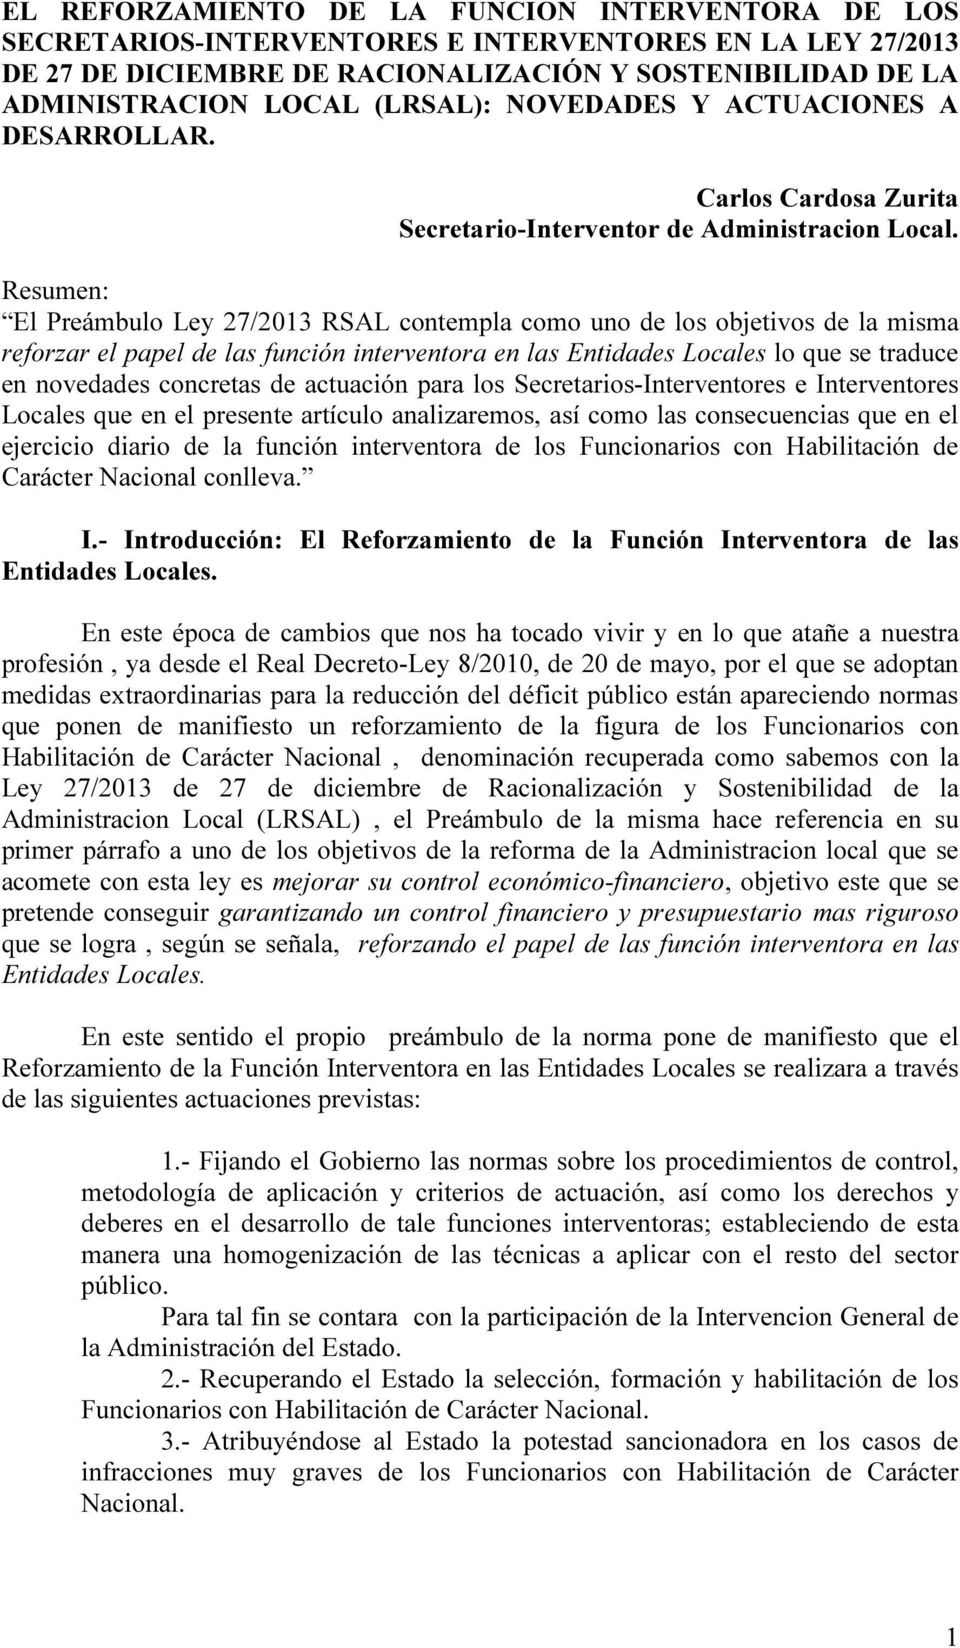 Resumen: El Preámbulo Ley 27/2013 RSAL contempla como uno de los objetivos de la misma reforzar el papel de las función interventora en las Entidades Locales lo que se traduce en novedades concretas